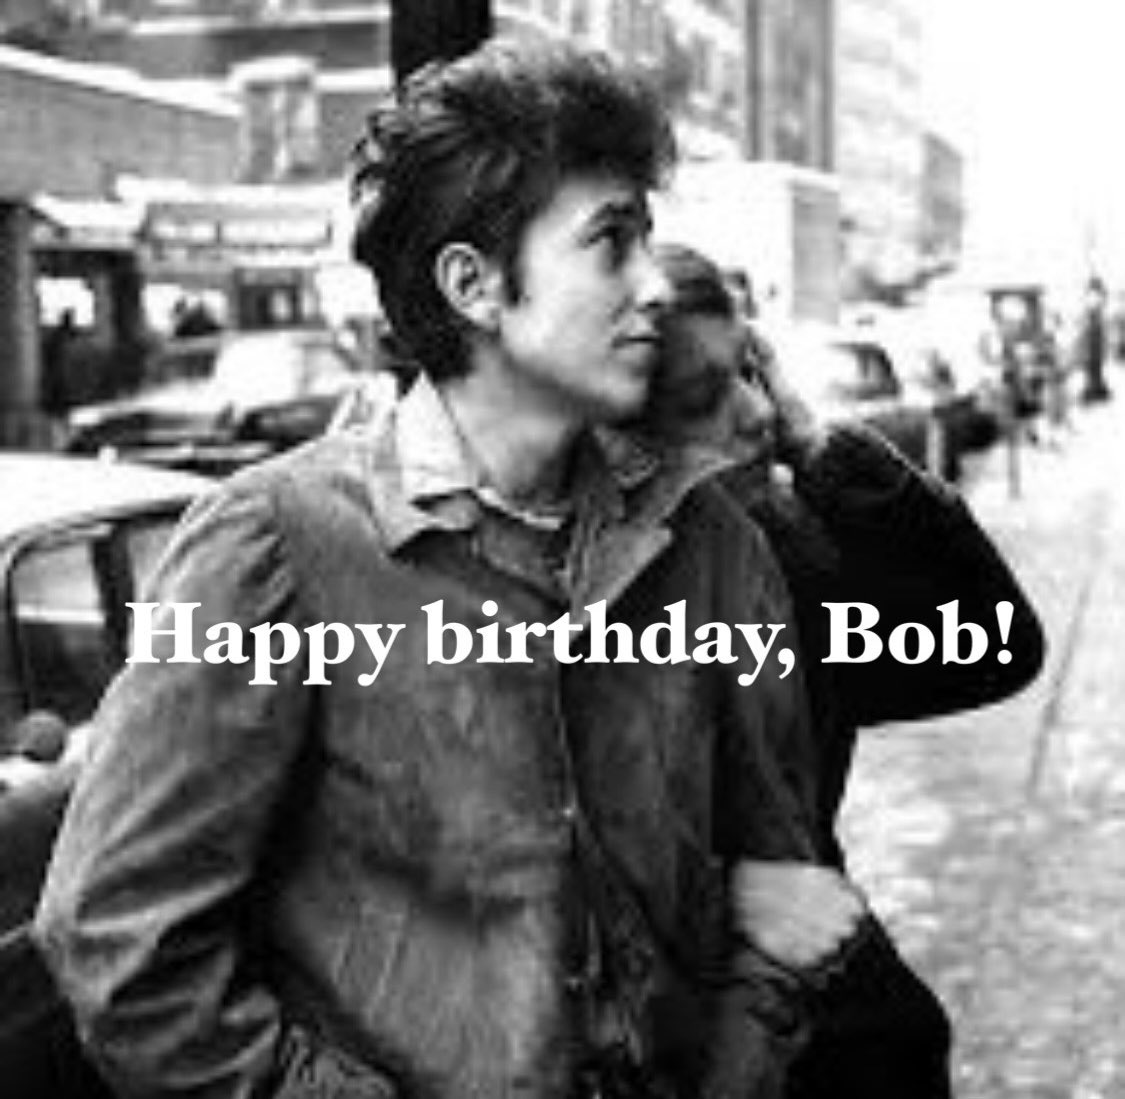 ［あなたがいなければ］”If not for you”

Happy birthday, Bob!
たくさんのすばらしい曲たちを創ってくれてくれて、ほんとうにありがとう！

#TheBand #GeorgeHarrison #TomPetty そして #TravelingWilburys との活動も最高です : )

#BobDylan #HappyBirthday #English #lyrics